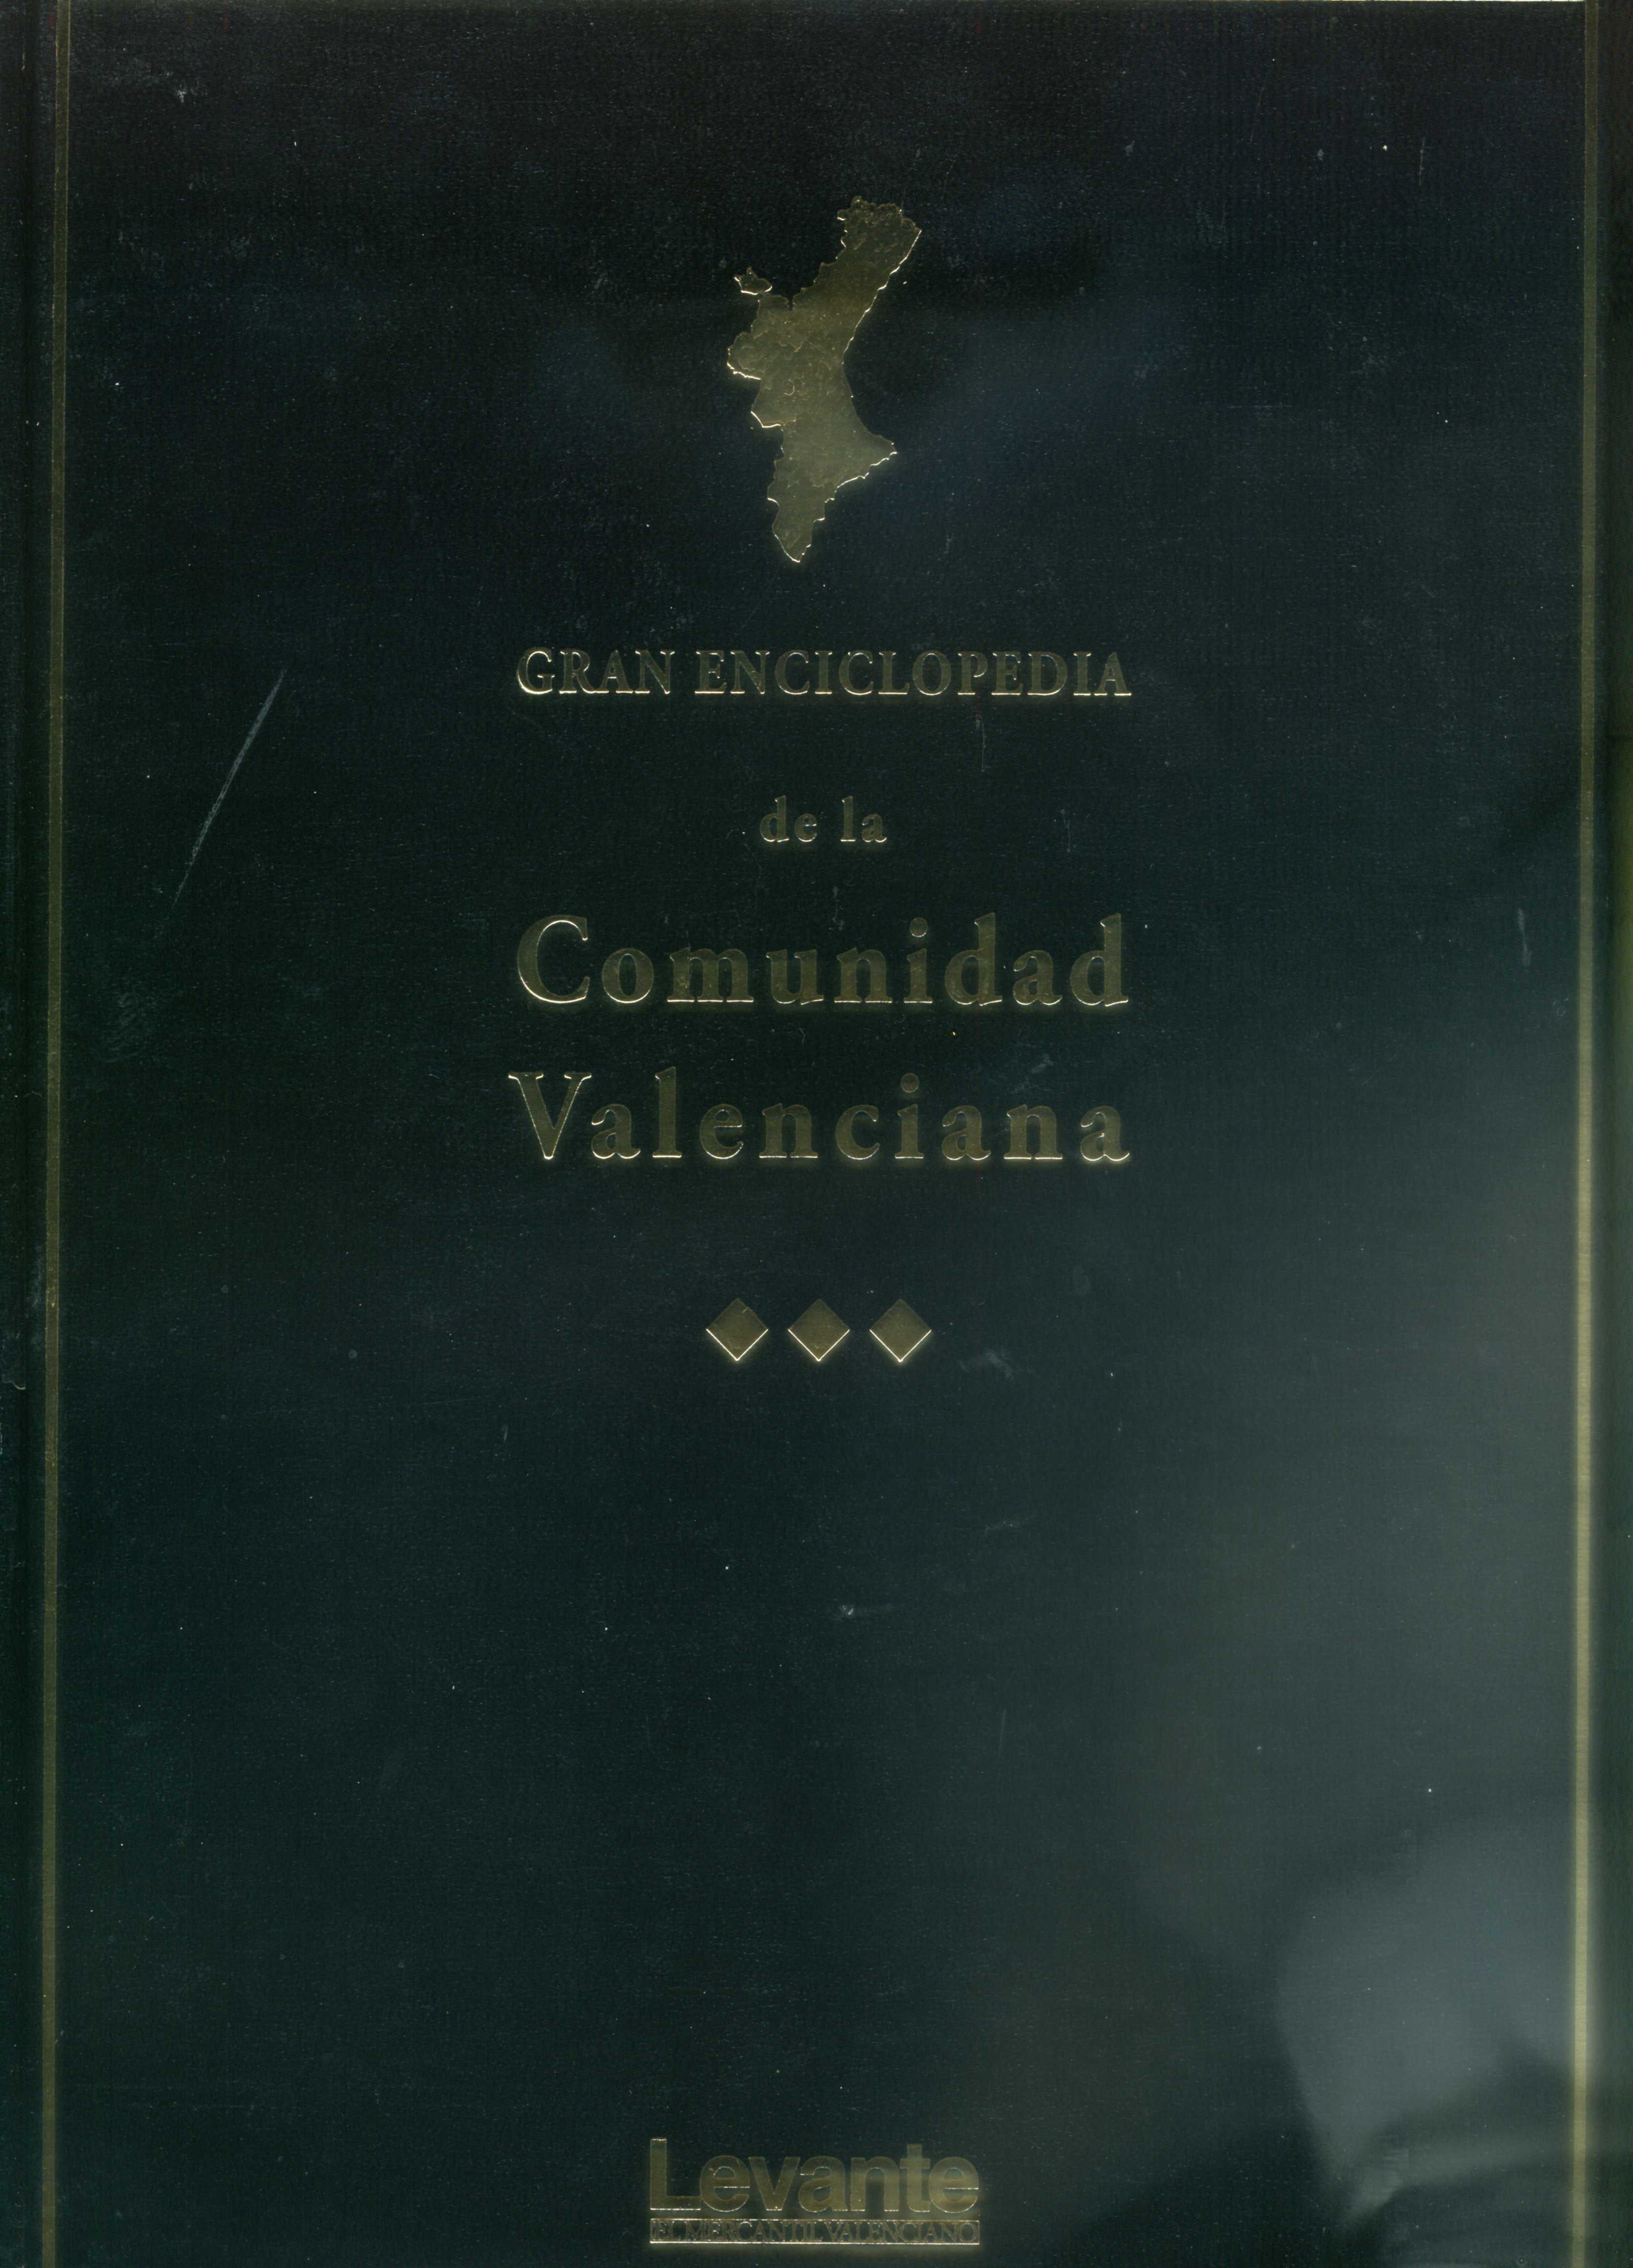 Gran Enciclopedia de la Comunidad Valenciana-8 (Gua-Lan)